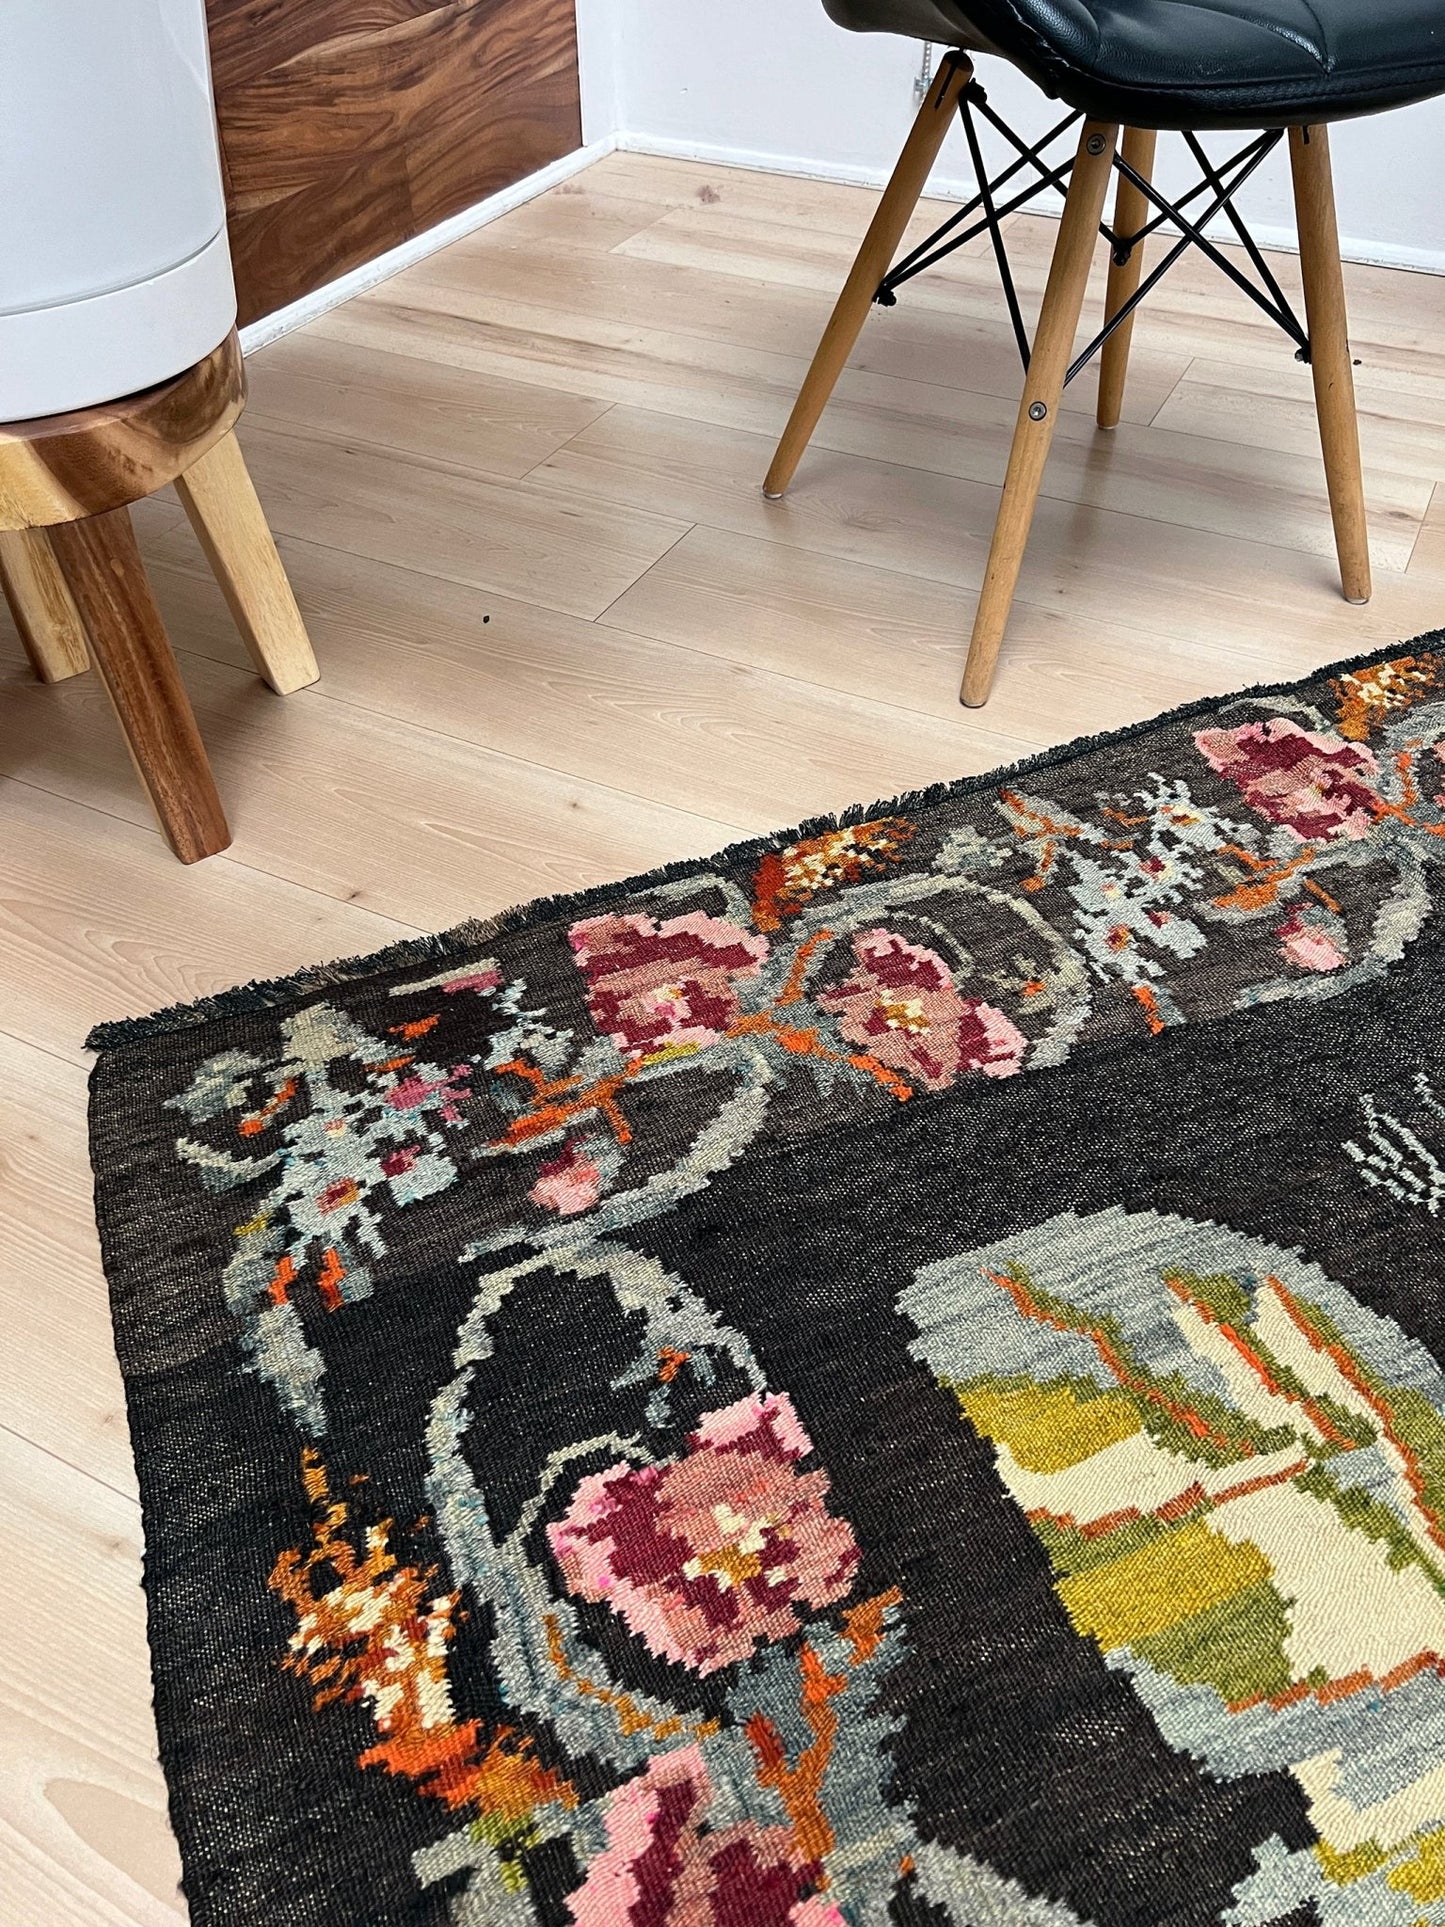 6x8 ft handmade lack vintage rug. Moldovan kilim vibrant colors. Kilim rug shop san francisco bay area. Black Rug for livinig room, bedroom, dining, kitchen.